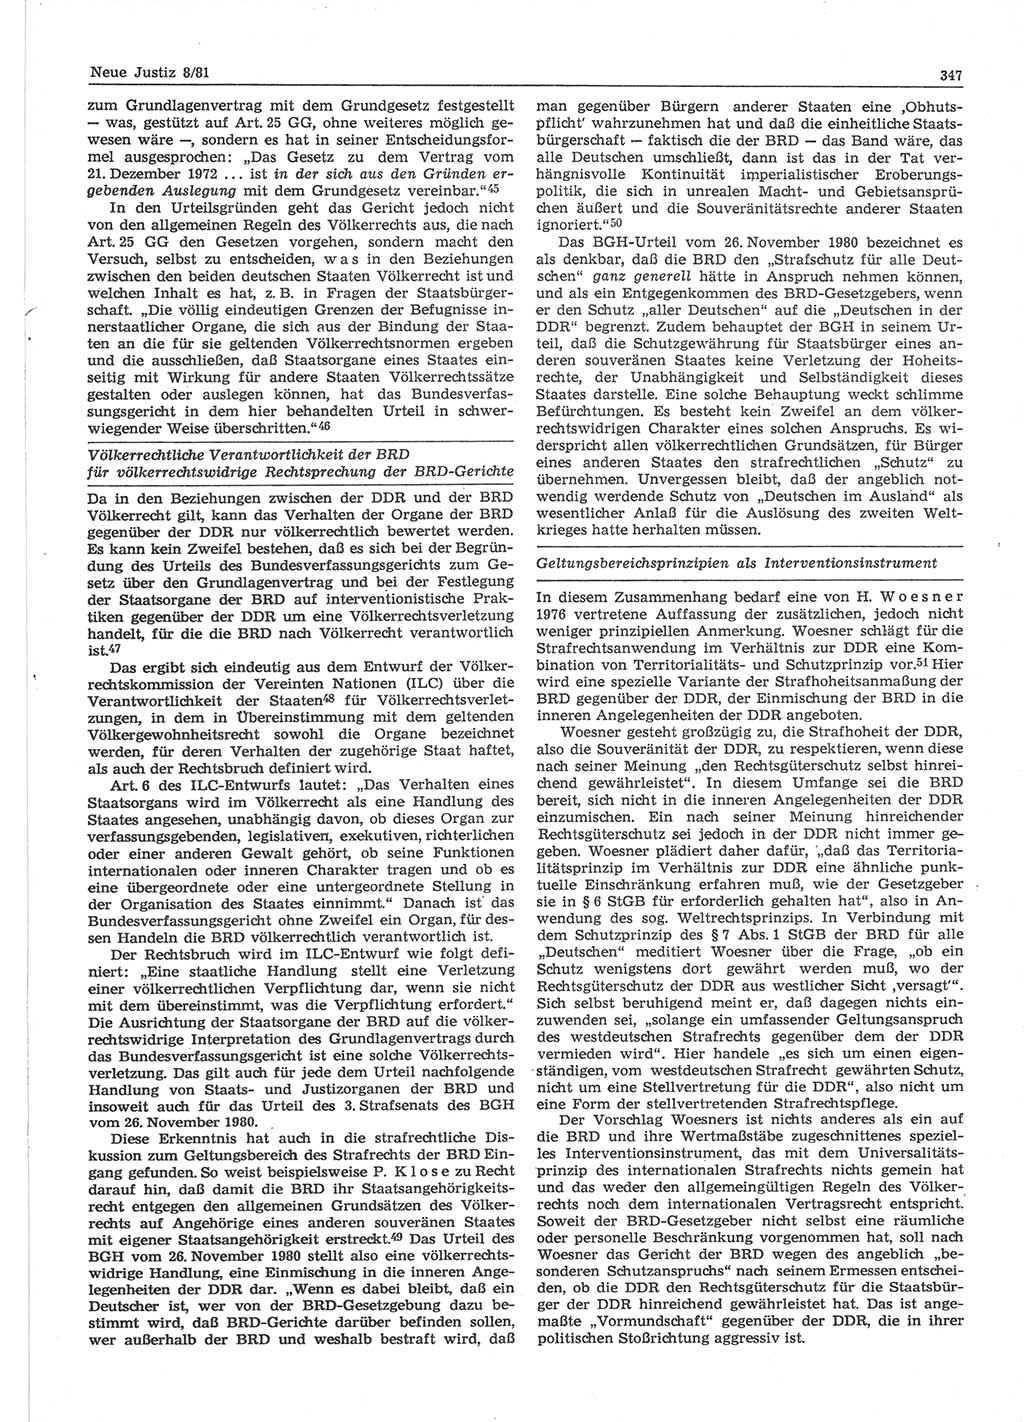 Neue Justiz (NJ), Zeitschrift für sozialistisches Recht und Gesetzlichkeit [Deutsche Demokratische Republik (DDR)], 35. Jahrgang 1981, Seite 347 (NJ DDR 1981, S. 347)